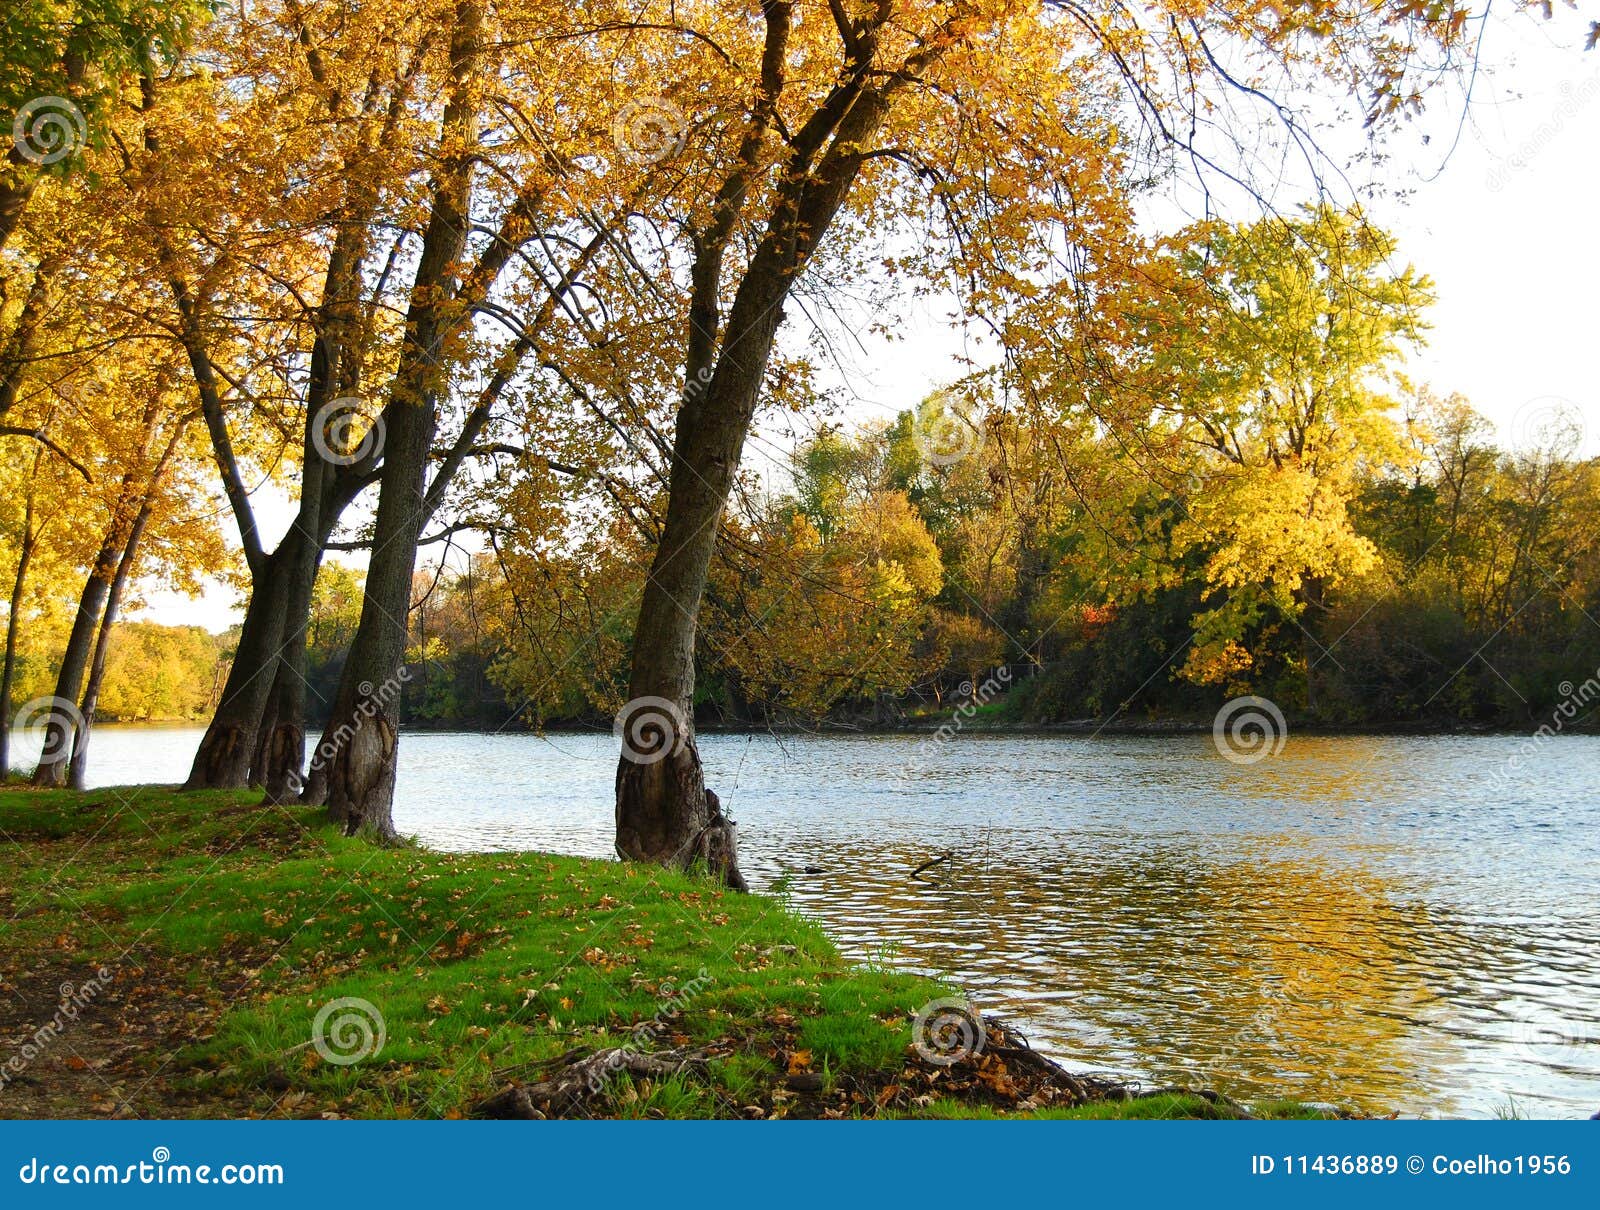 autumn riverbank landscape